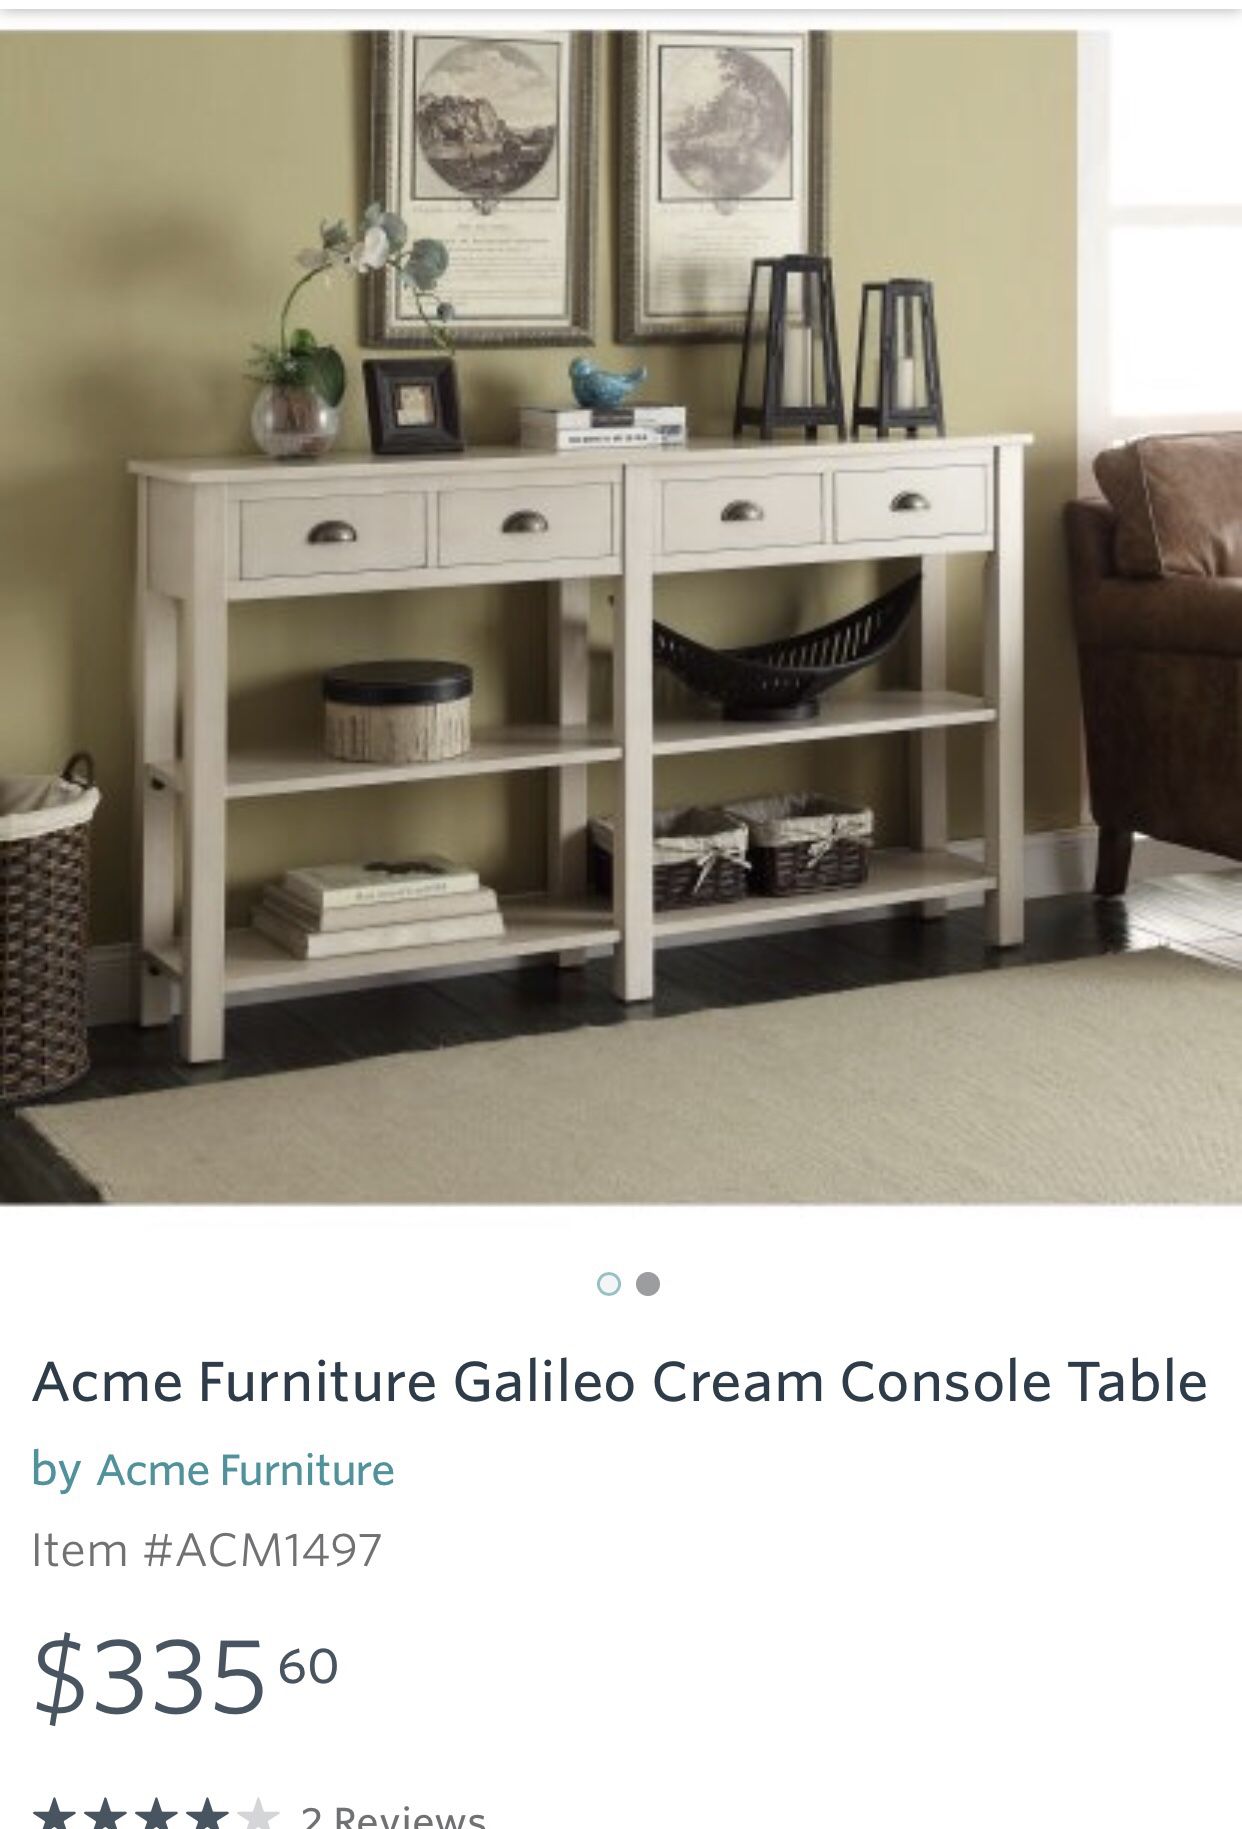 Acme Furniture Galileo Cream Console Table